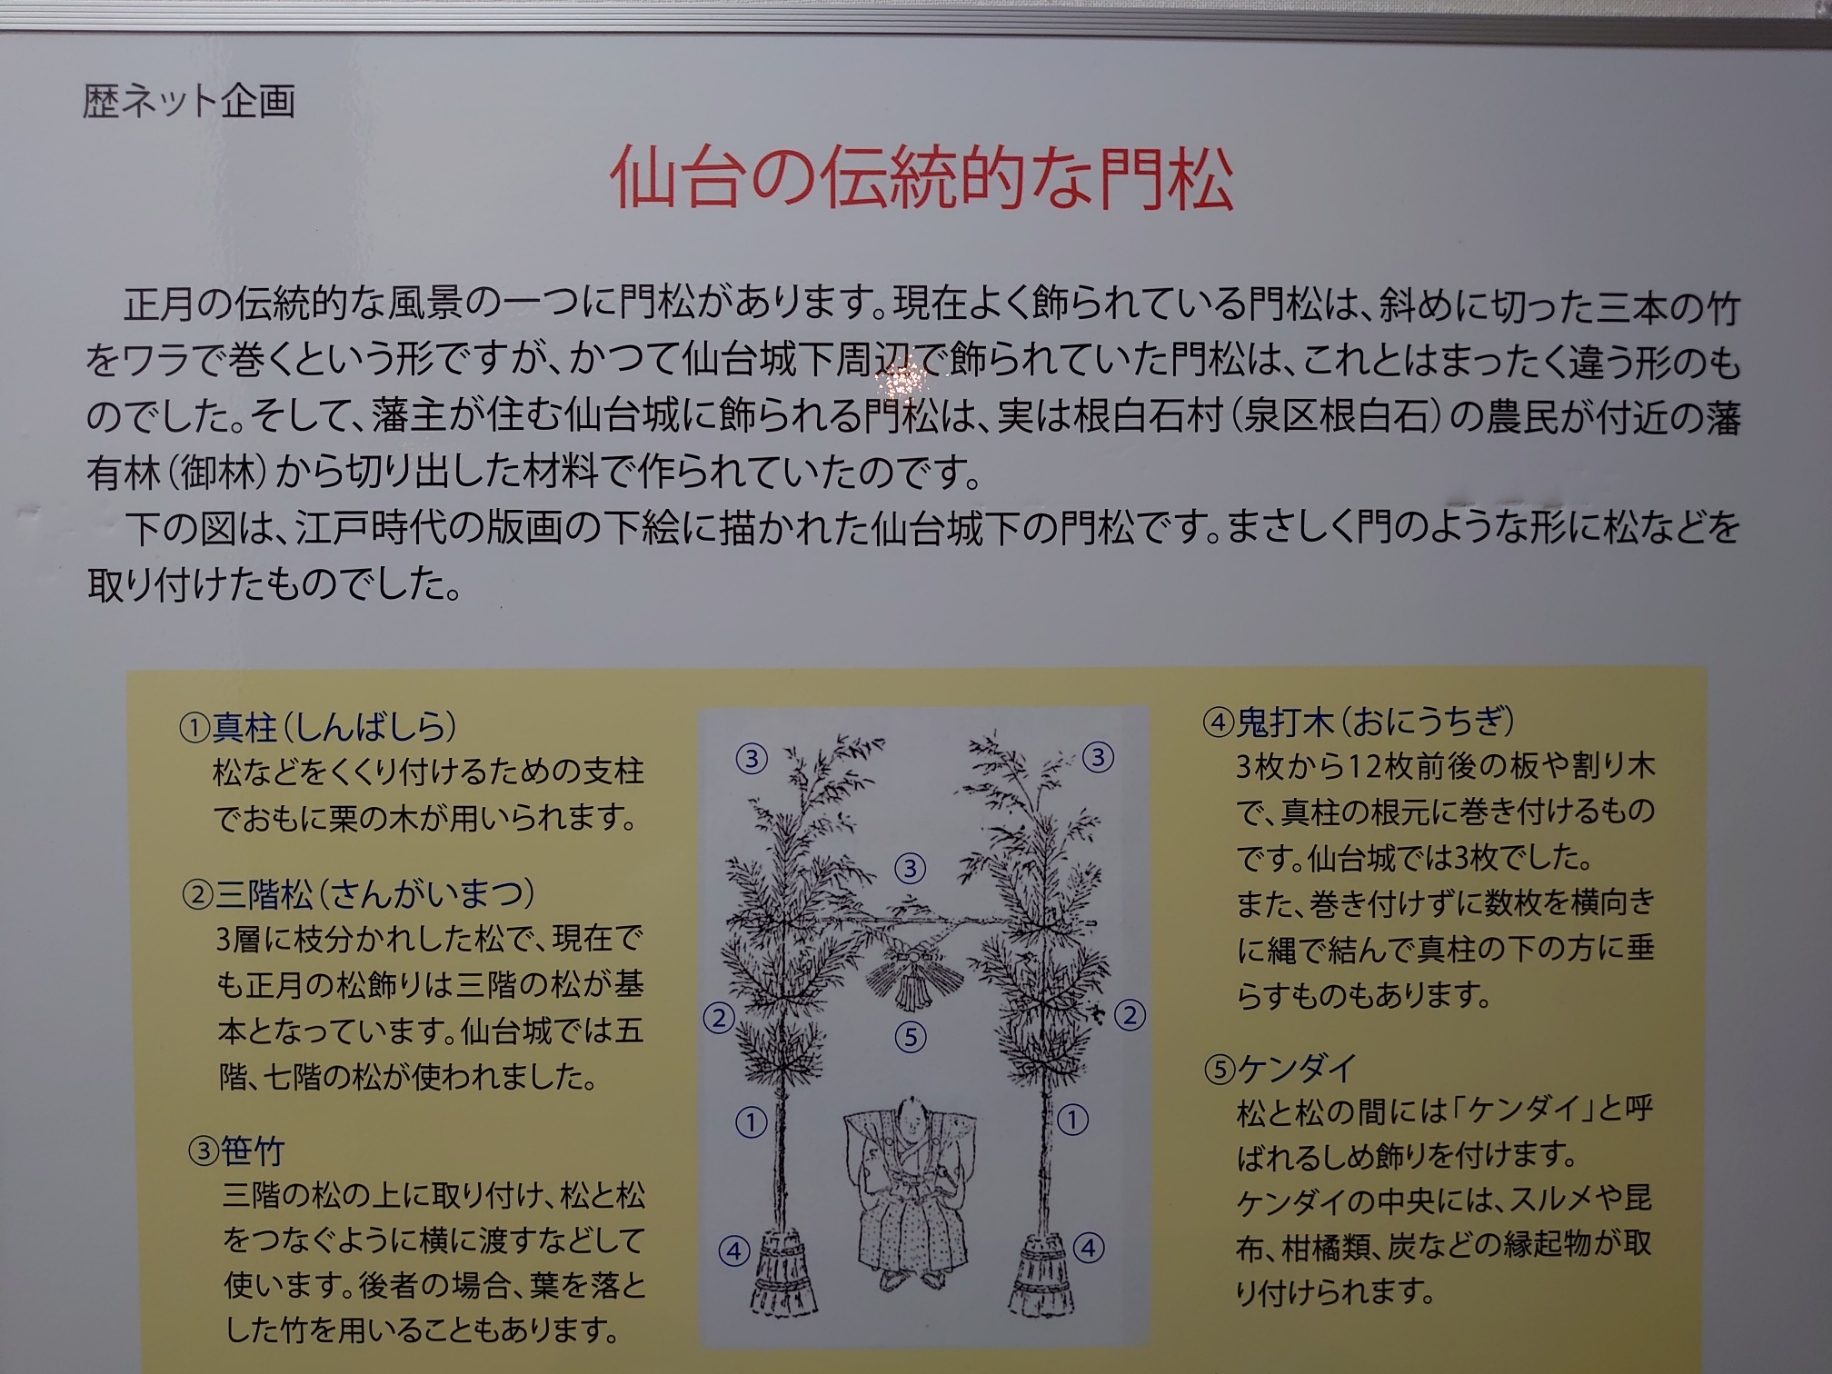 仙台の伝統的な角松についての解説